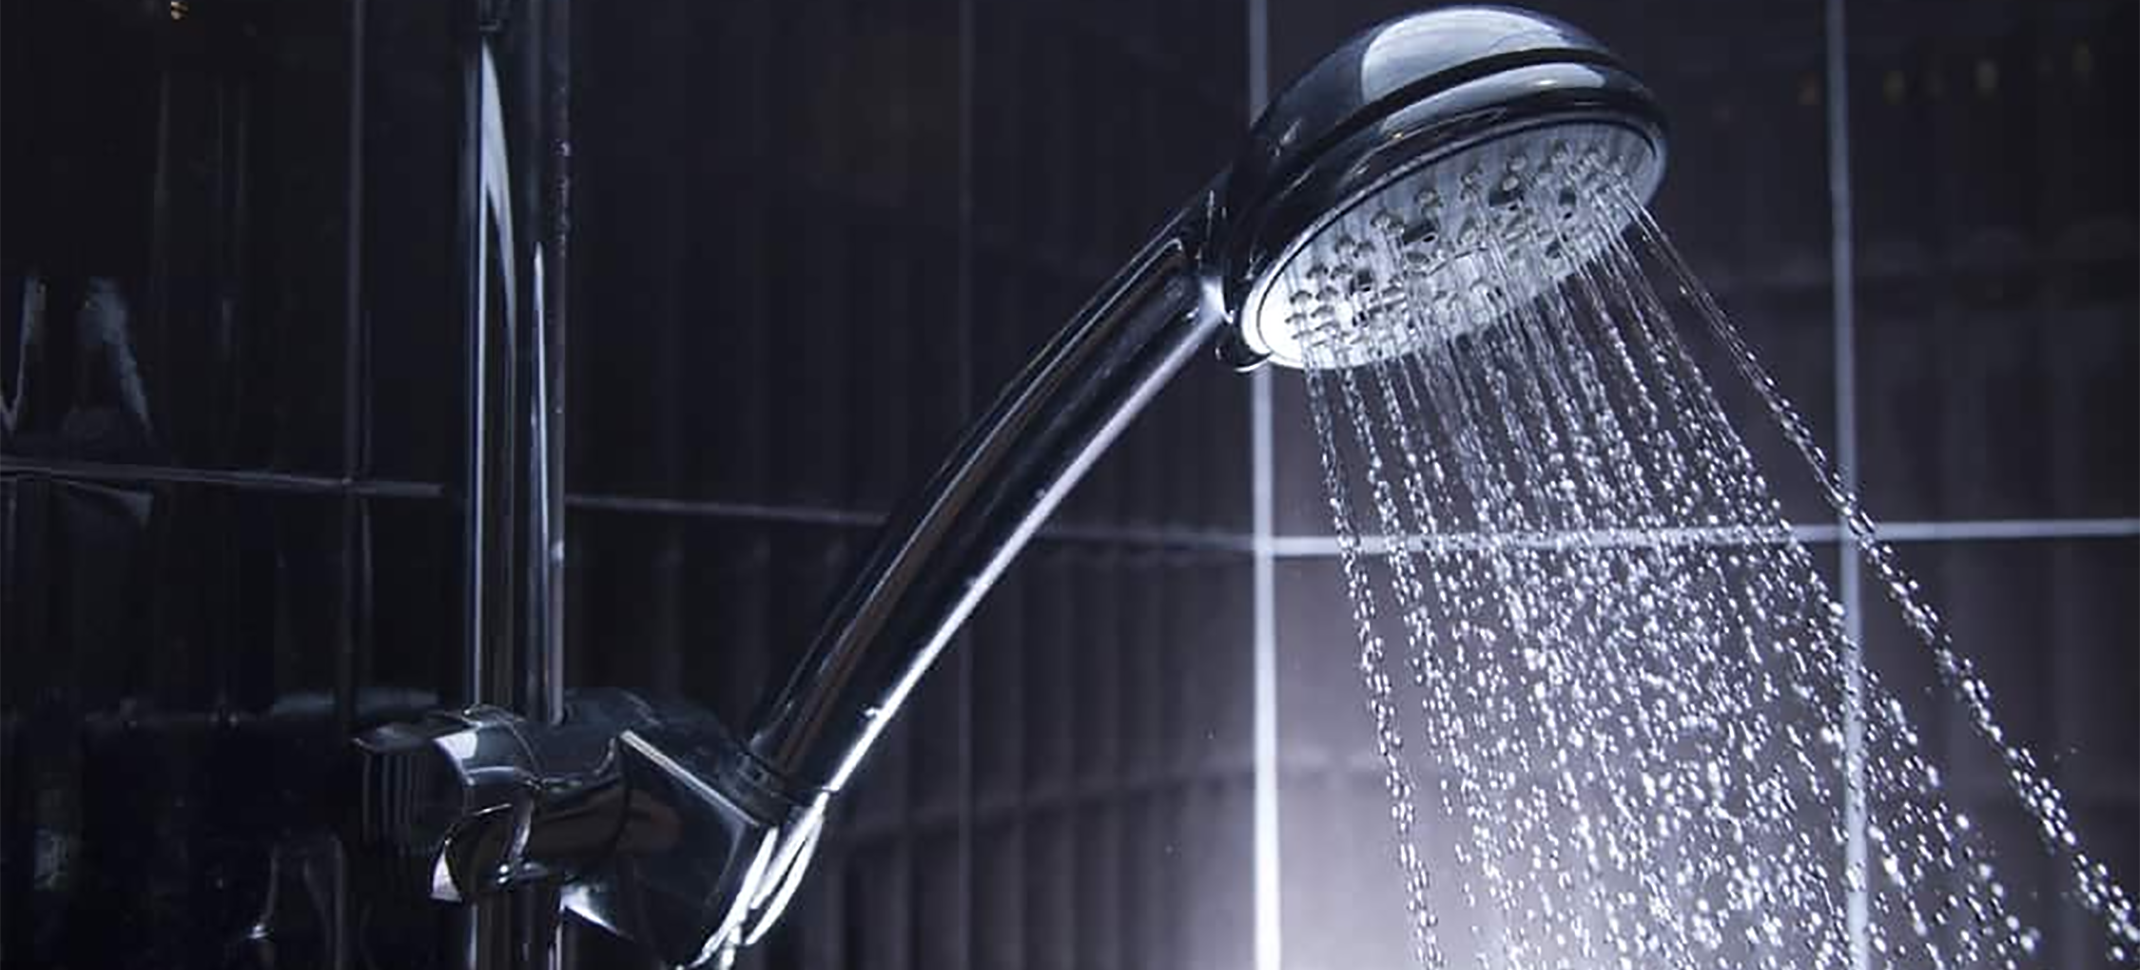 Plumbing Deals - Low Flow Showerheads